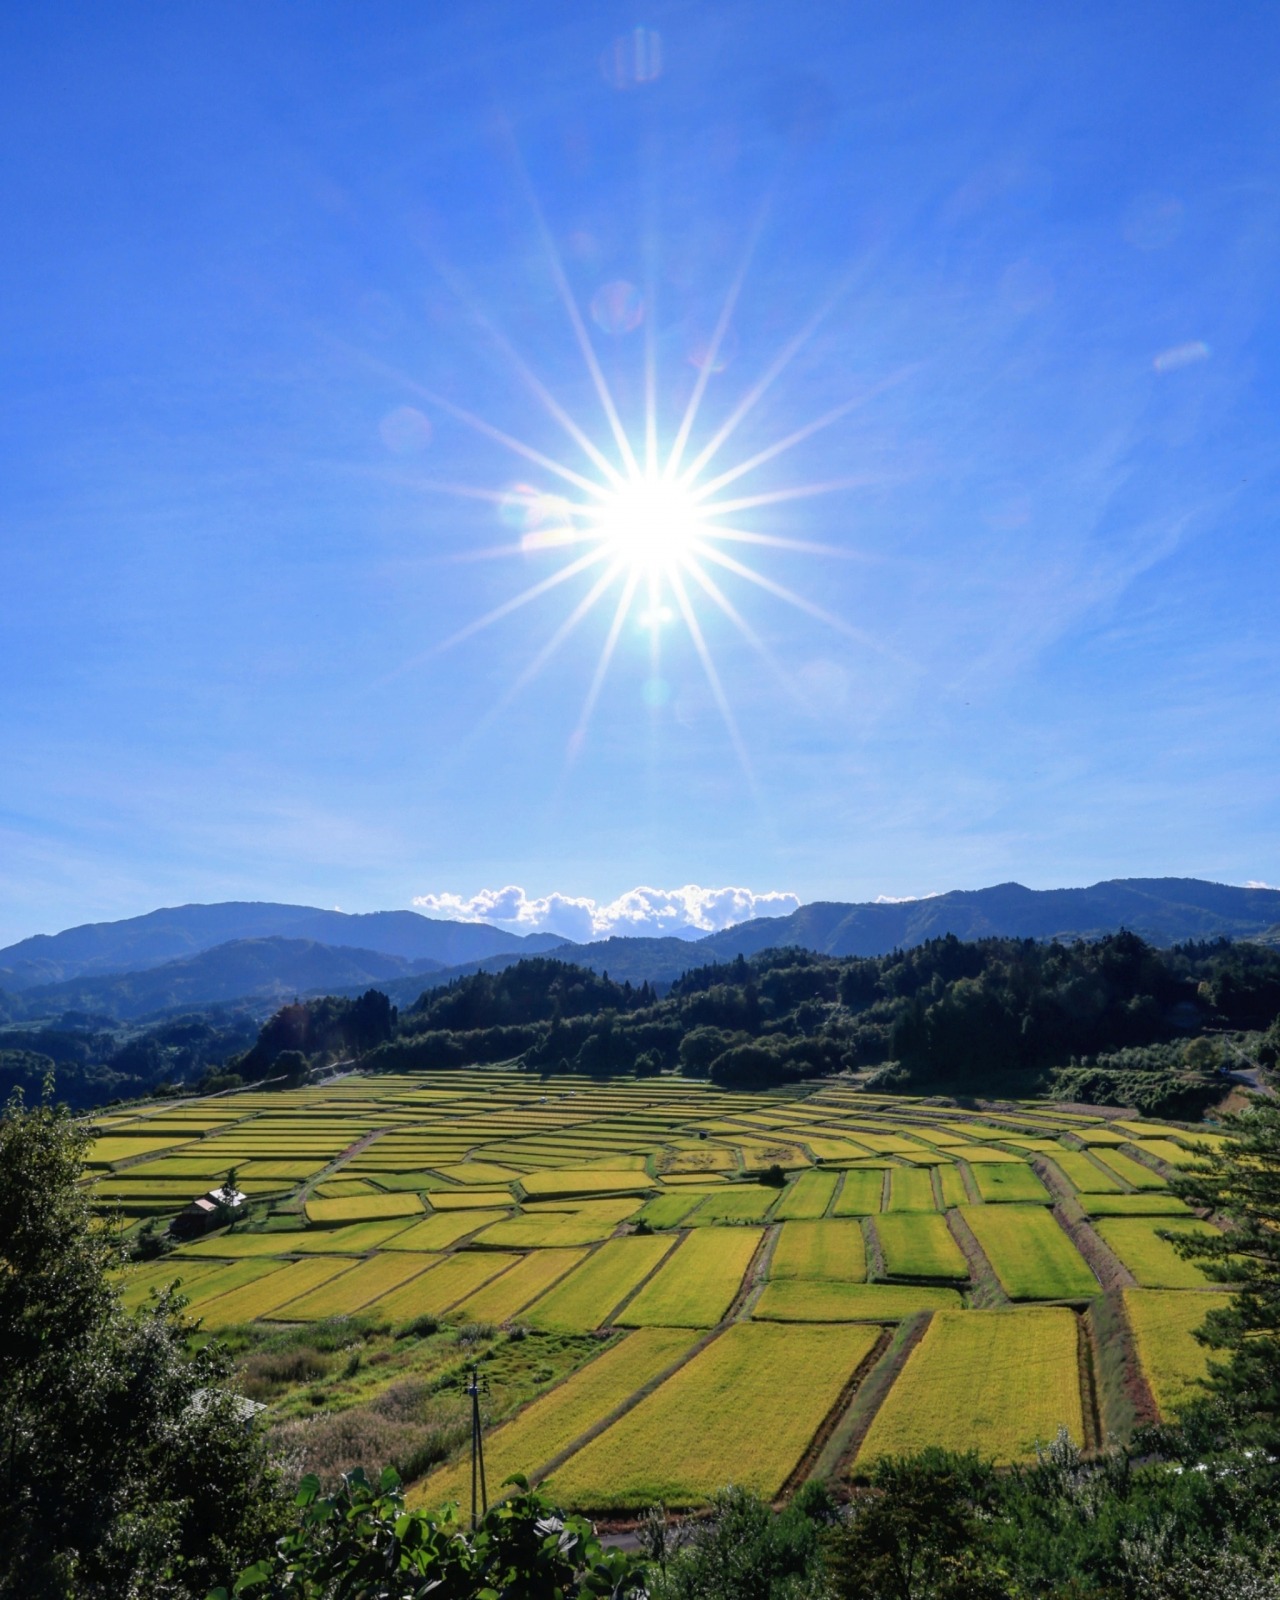 日本の棚田百選 椹平の棚田 観光スポット やまがたへの旅 山形県の公式観光 旅行情報サイト